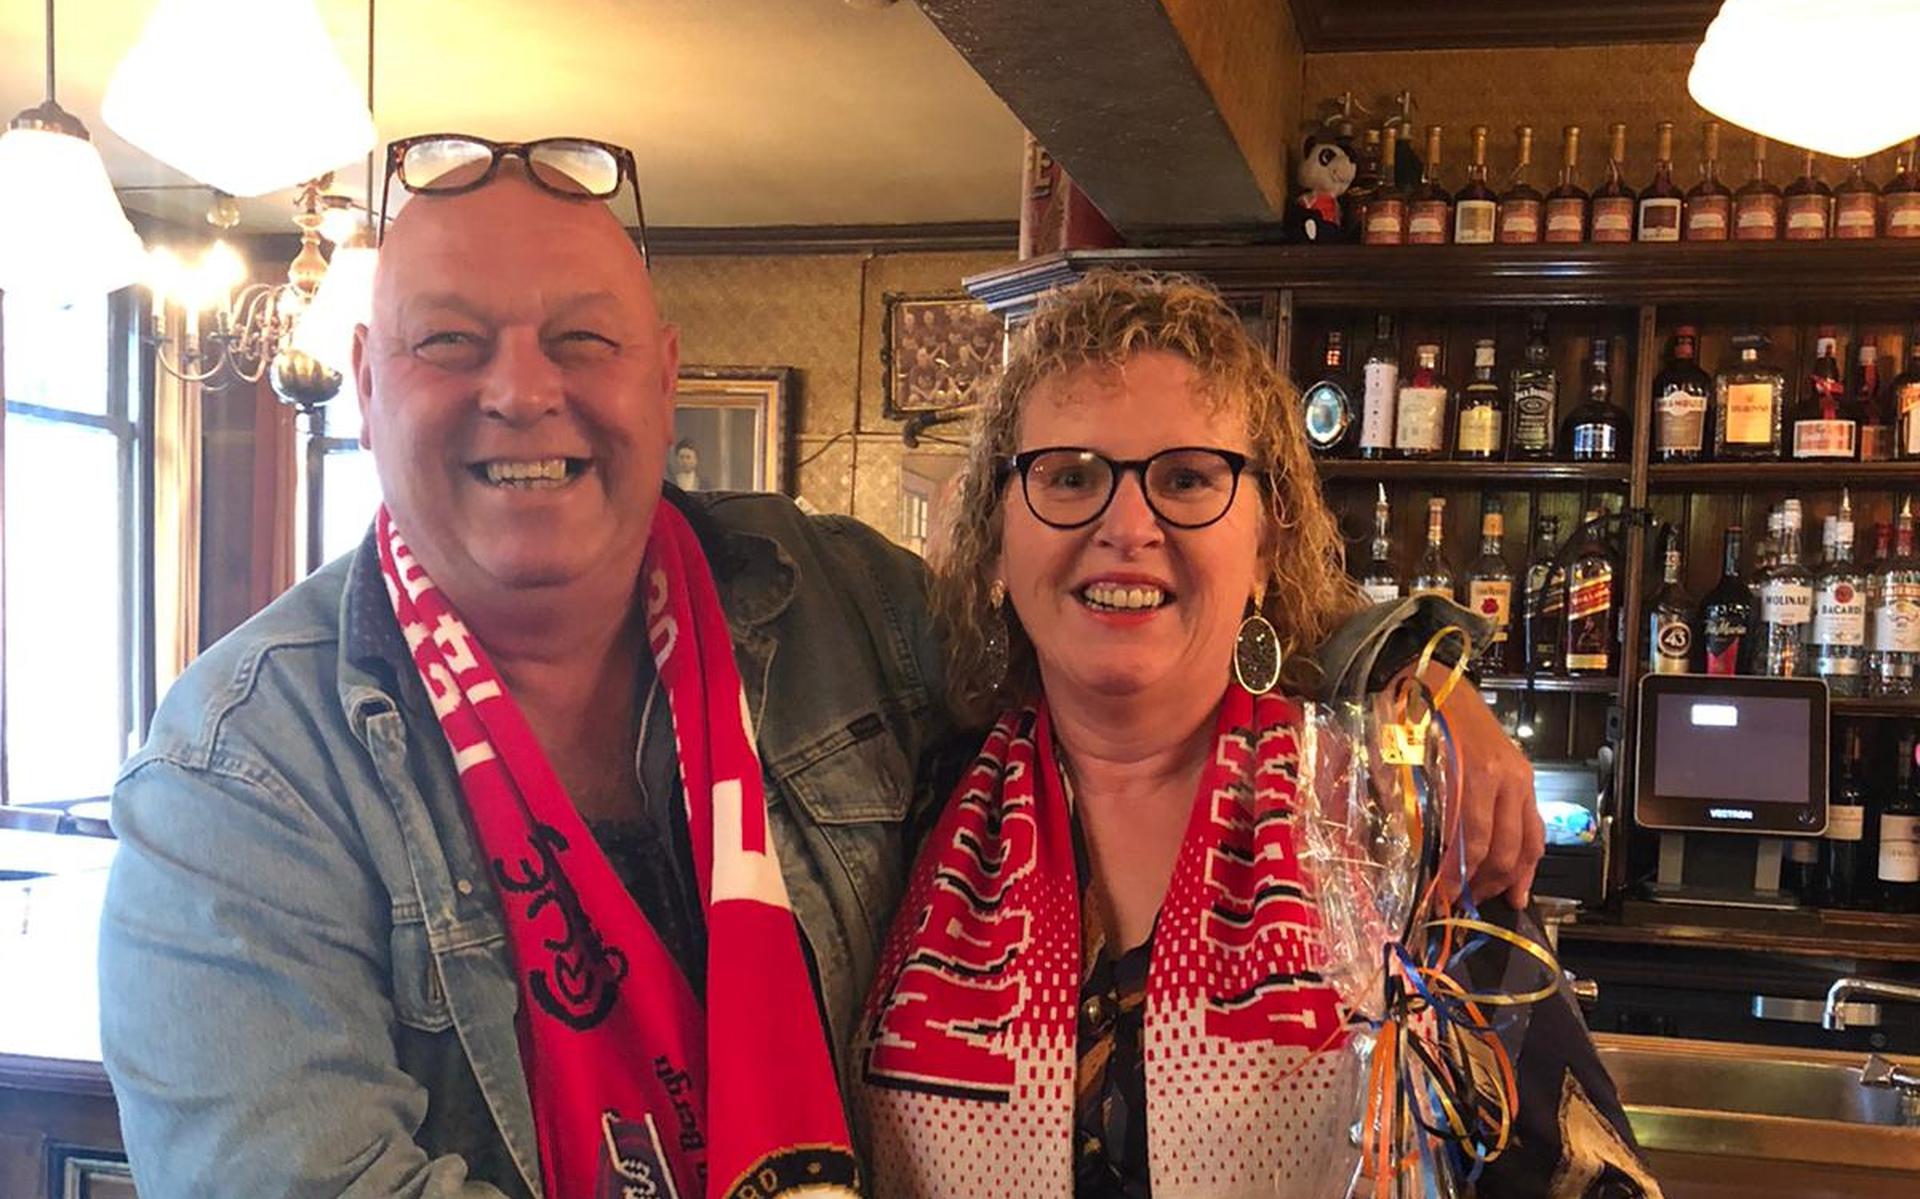 Trenco Kreulen en Rika Jonkers uit Emmen houden het als Feyenoord-supporter en Ajax-fan uitstekend met elkaar uit. Zowel thuis als in cafe Rue de la Gare, waar zij elkaar bijna tien jaar geleden ontmoetten